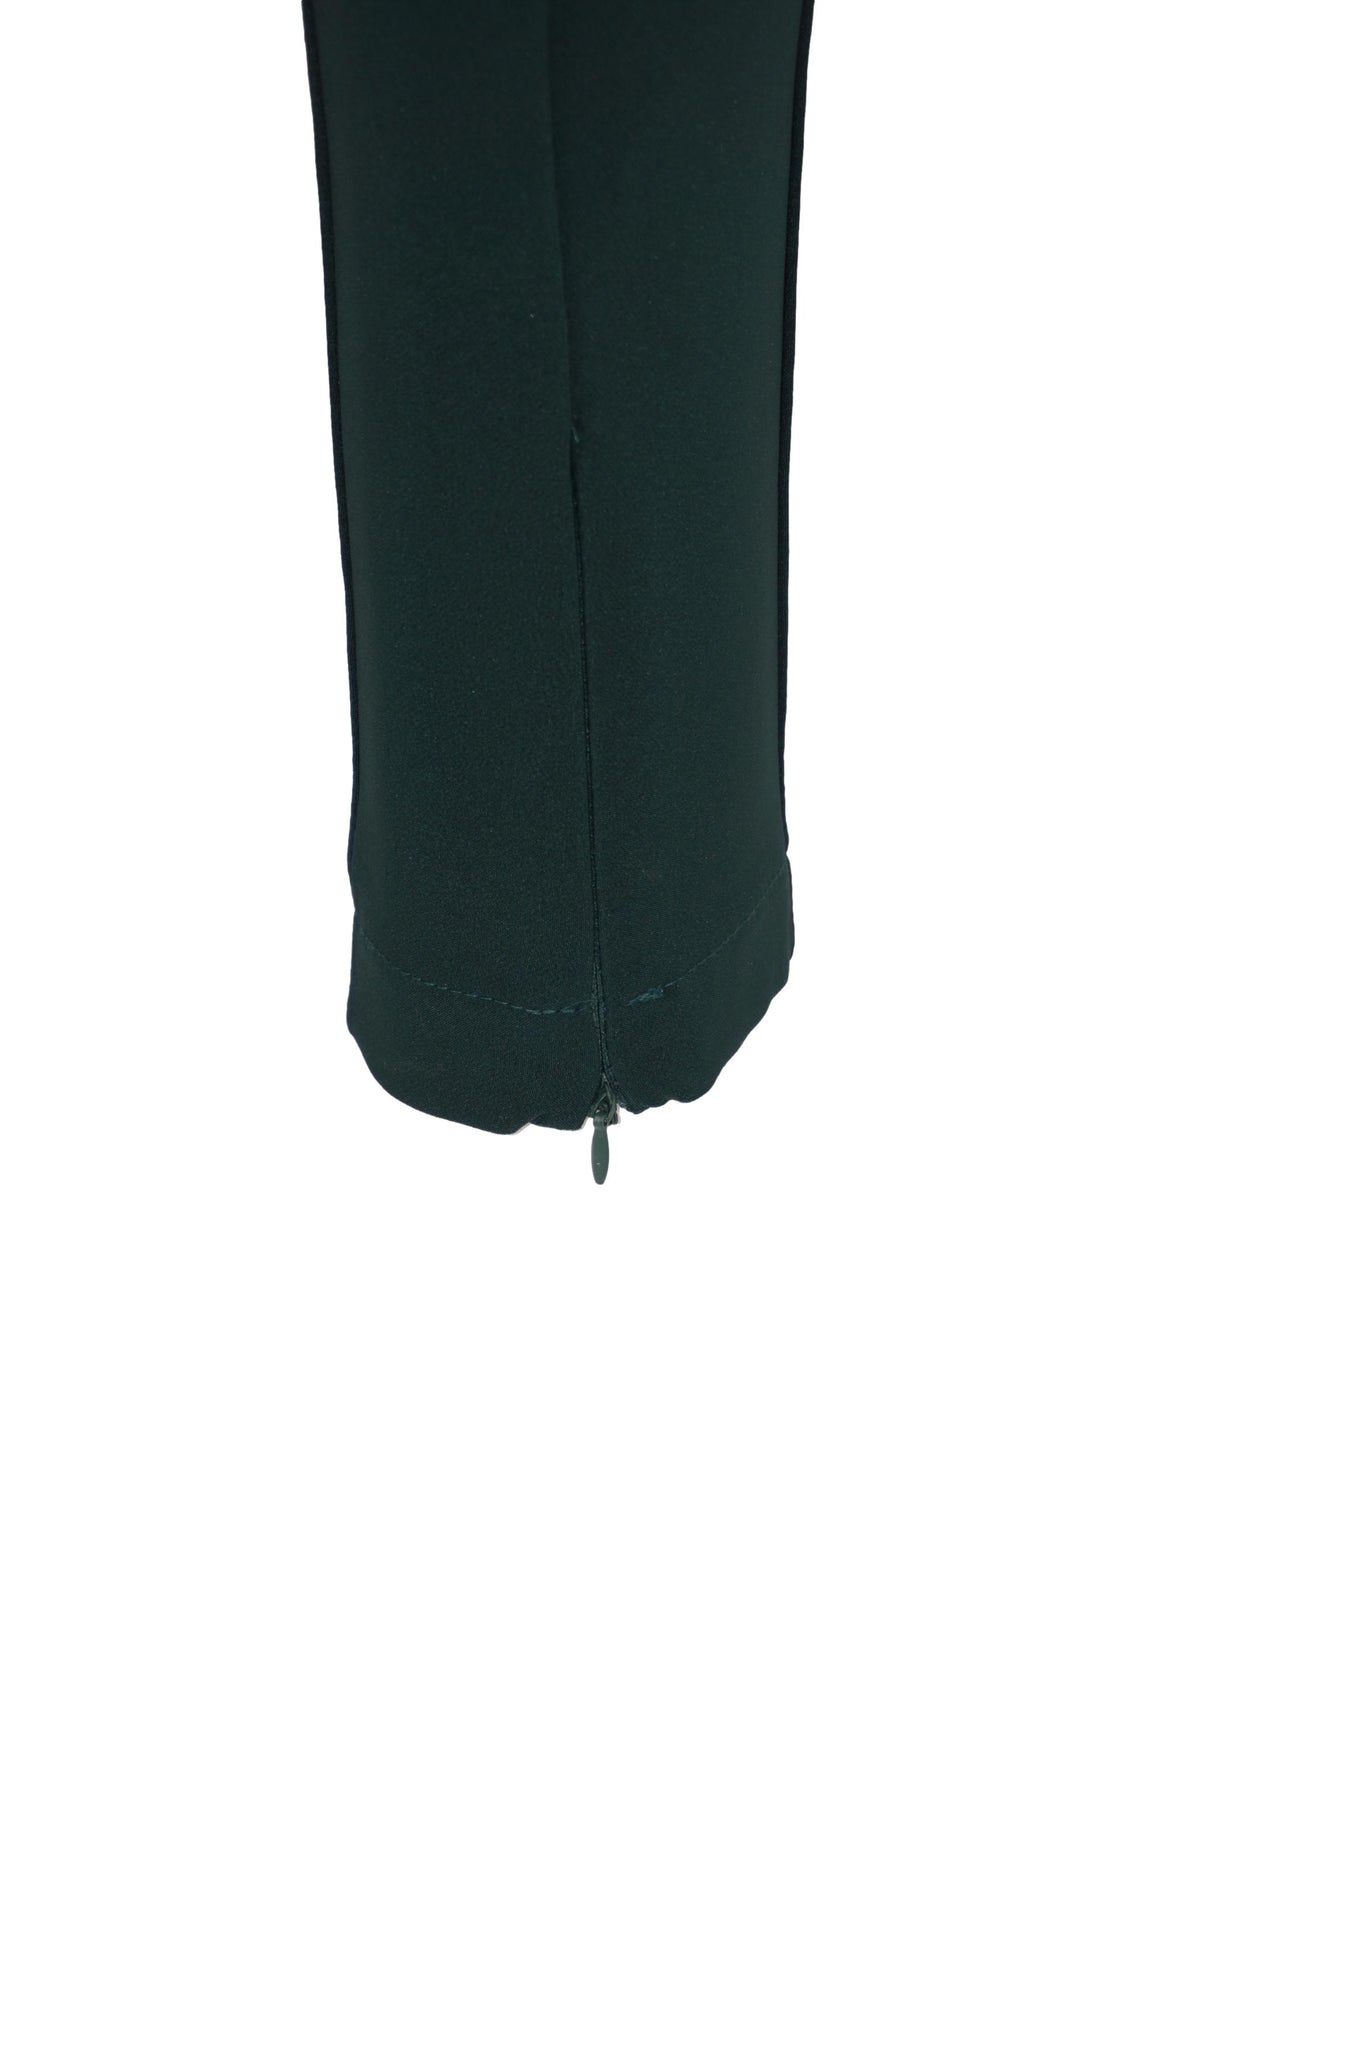 Pantalone Slim Fit in Punto Milano / Verde - Ideal Moda